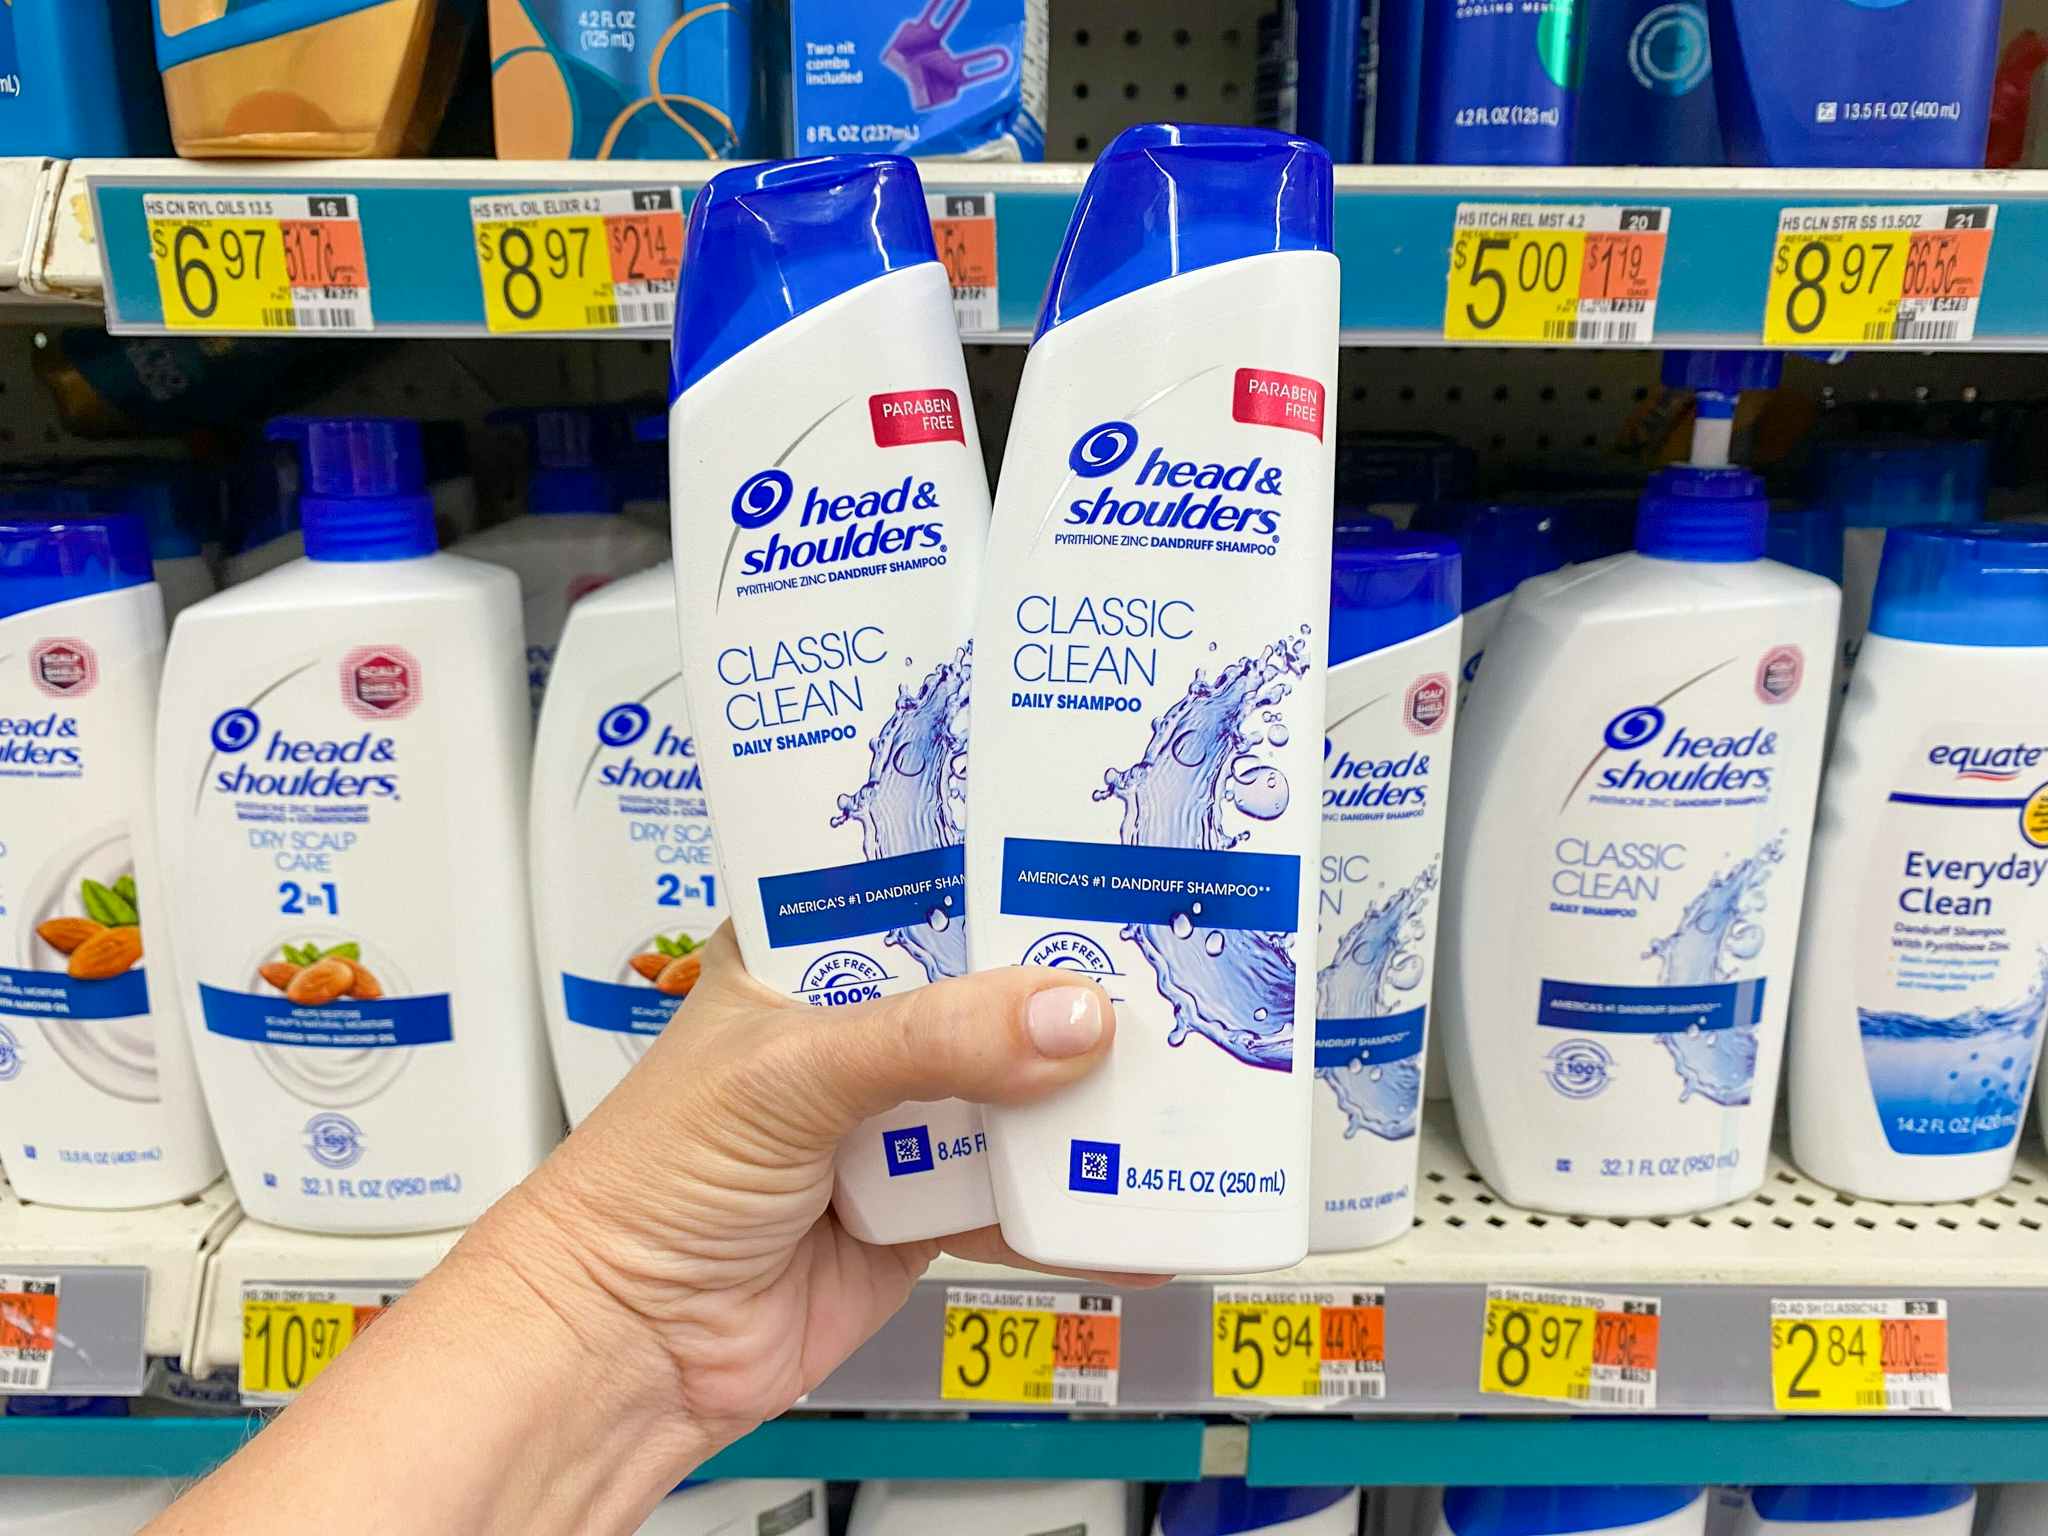 Head & Shoulders Classic Clean Shampoo at Walmart